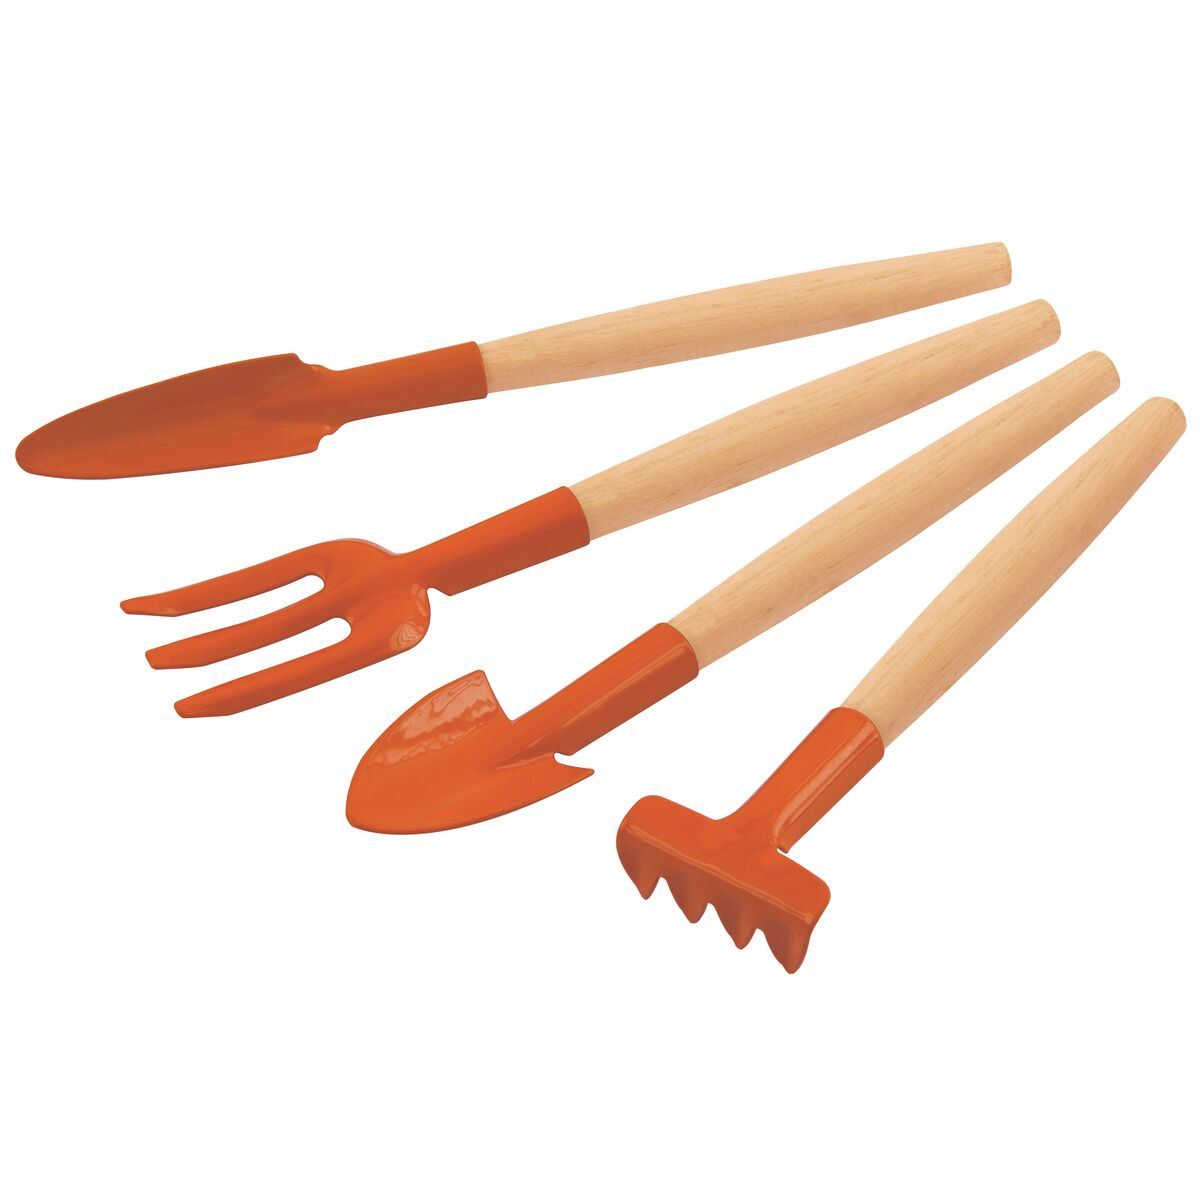 4 pieces garden tool set, wood handles, plastic package